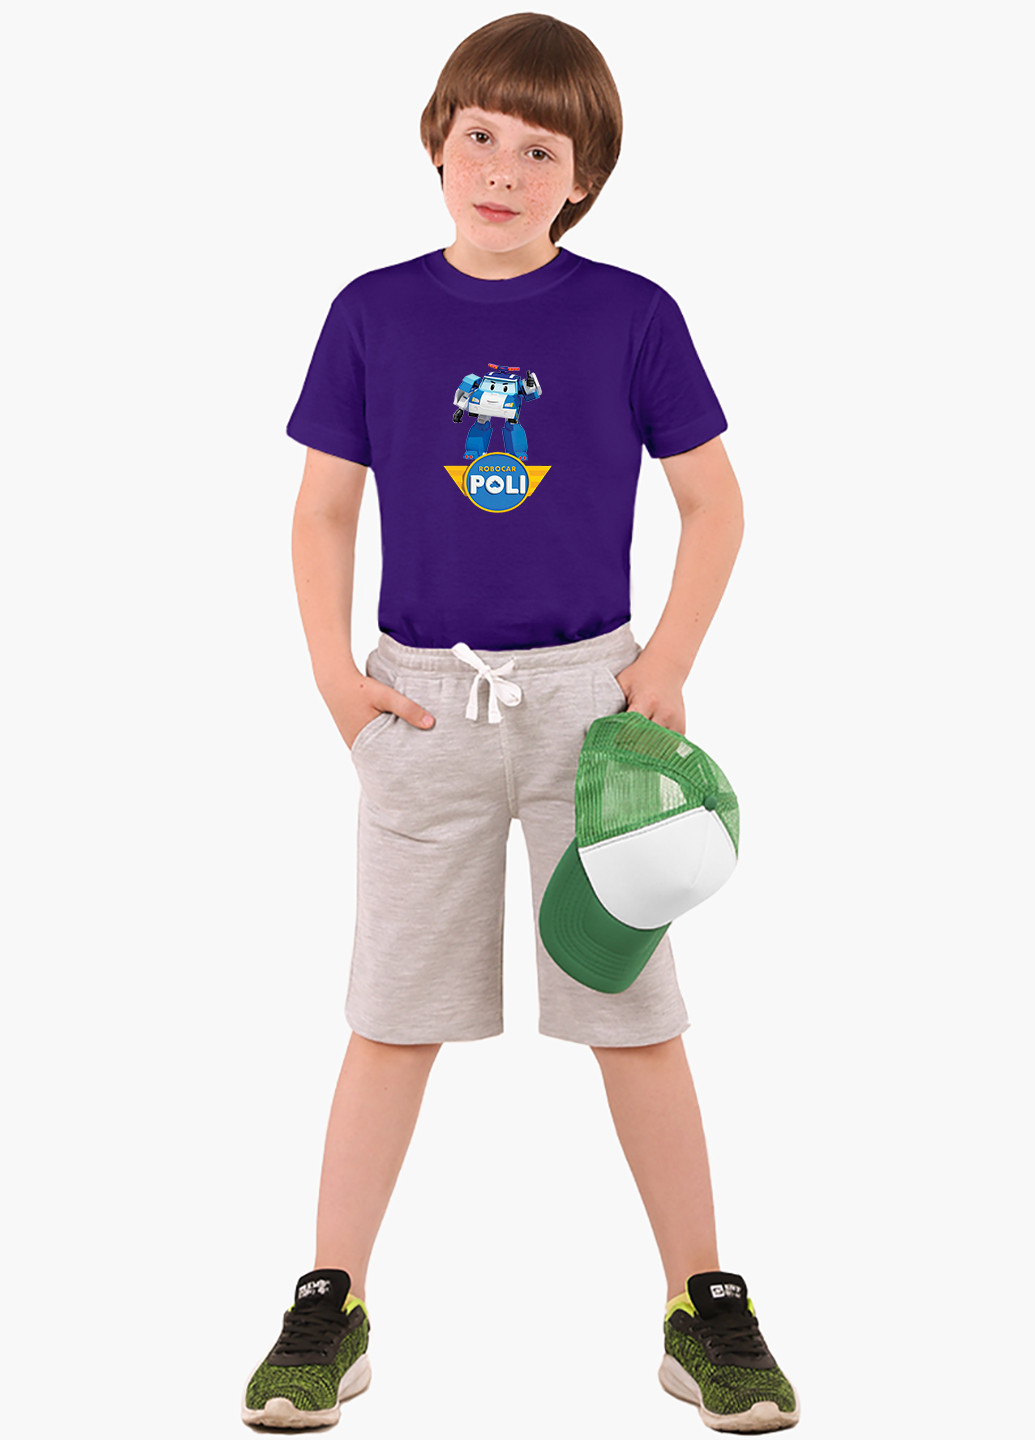 Фіолетова демісезонна футболка дитяча робокар полі (robocar poli) (9224-1620) MobiPrint